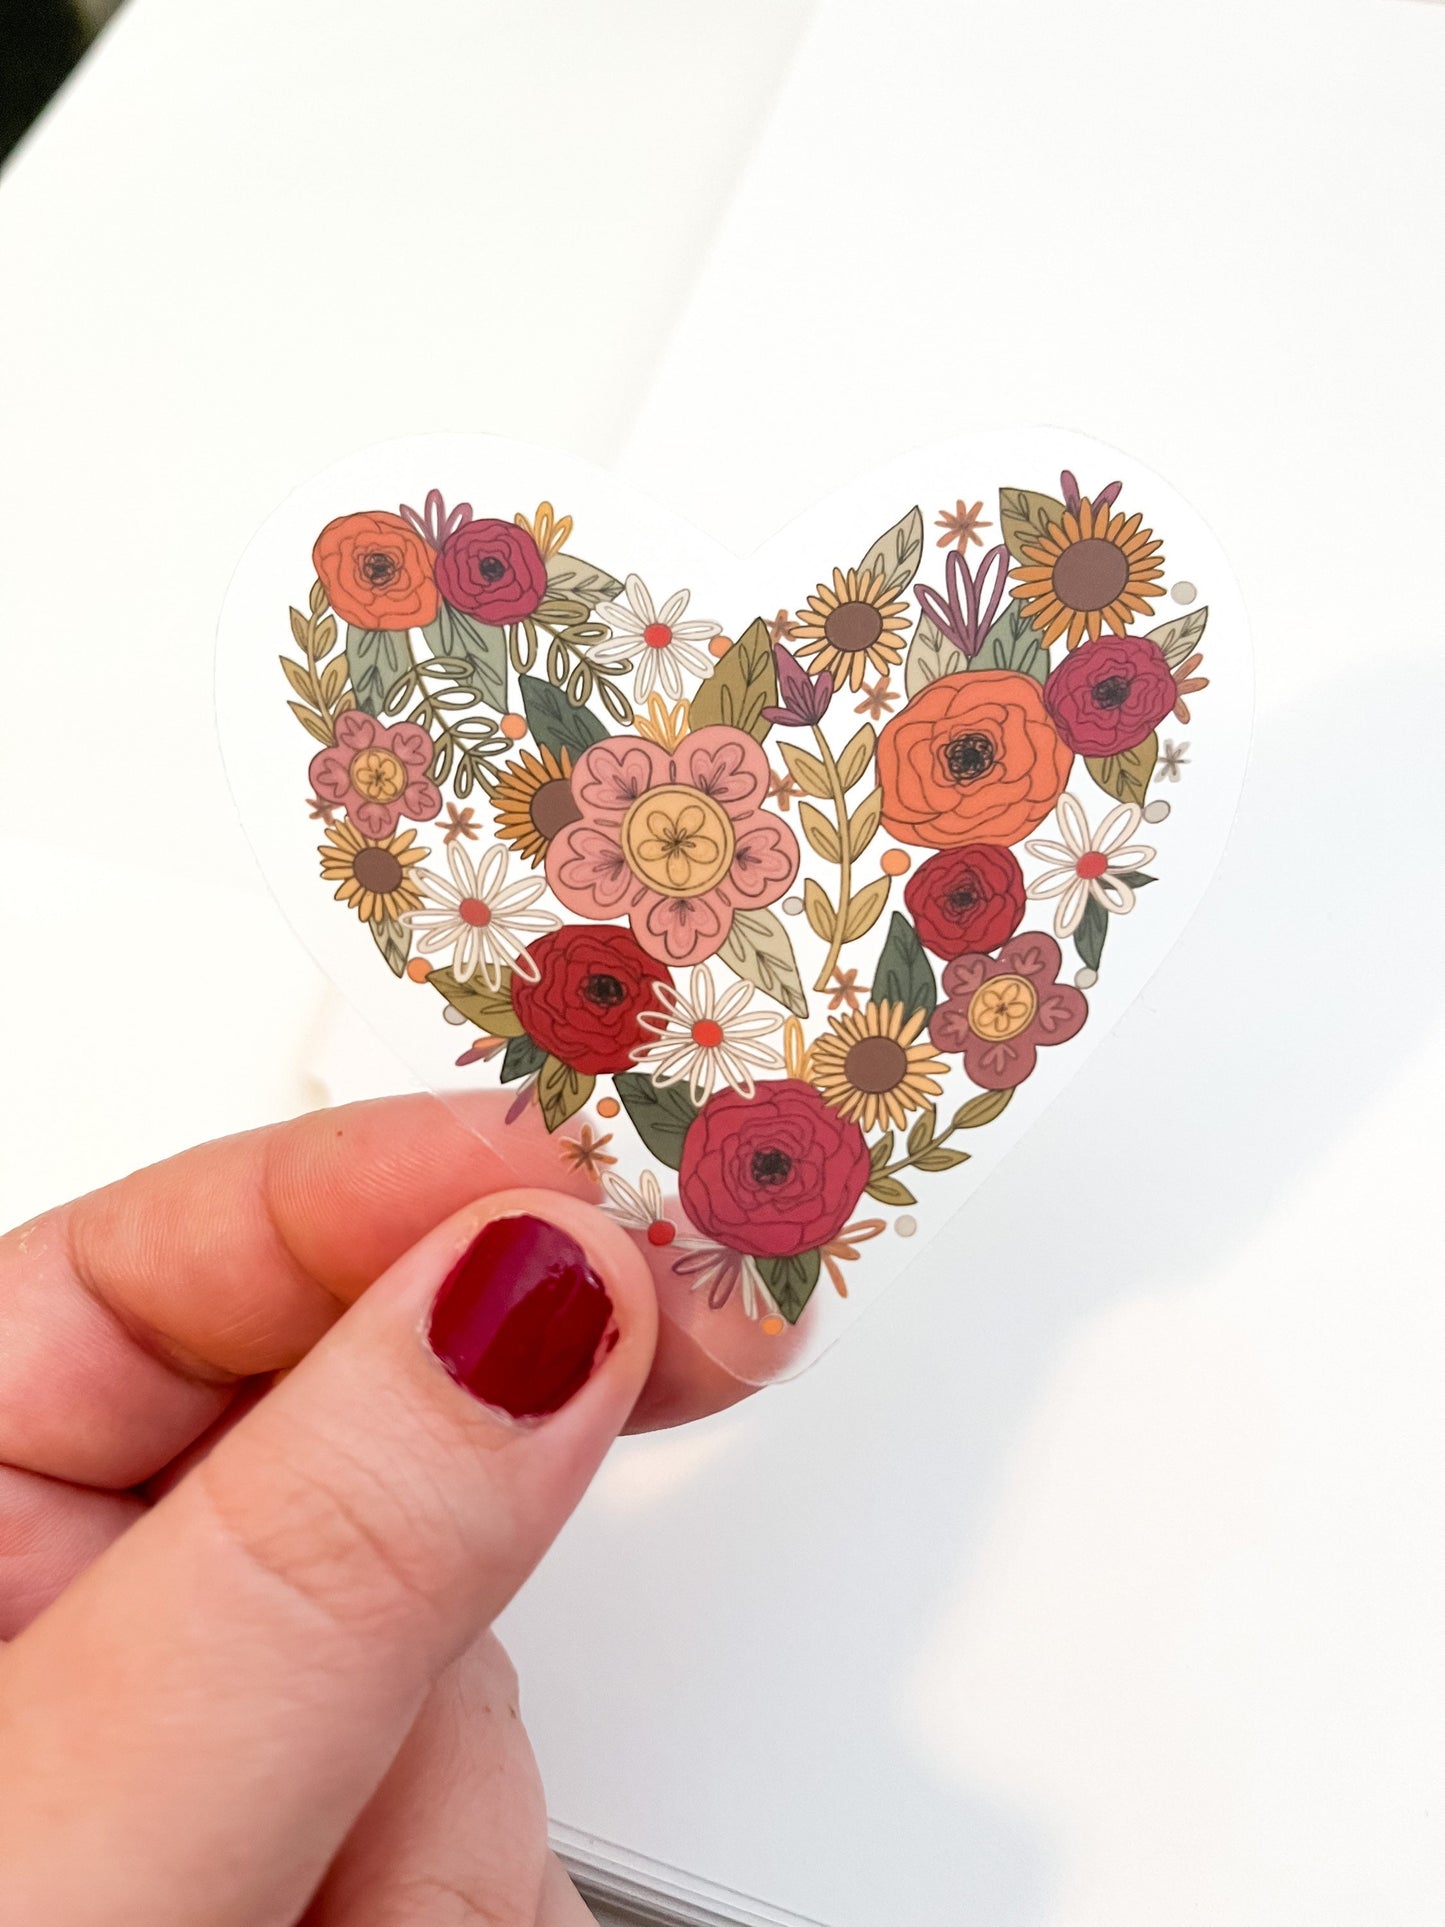 CLEAR Love in Bloom Floral Heart Sticker - Vinyl, Waterproof Sticker